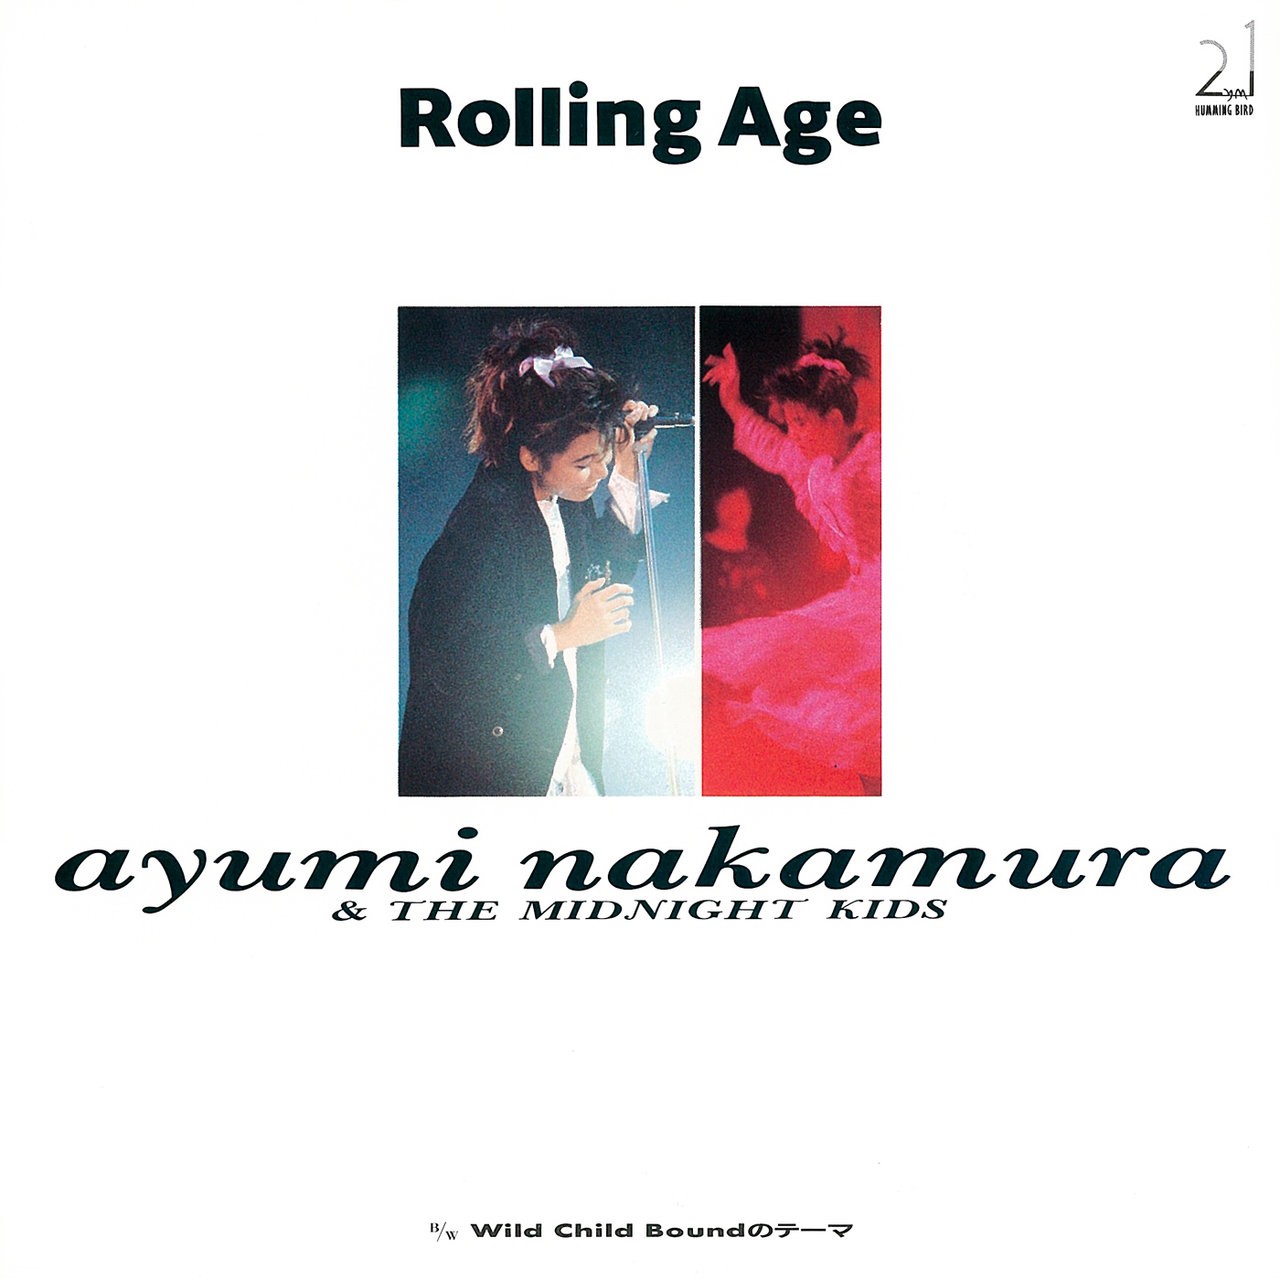 Ayumi Nakamura (中村あゆみ) - Rolling Age ⁄ Wild Child Boundのテーマ (2019 Remastered) (1987/2019) [FLAC 24bit/48kHz] Download